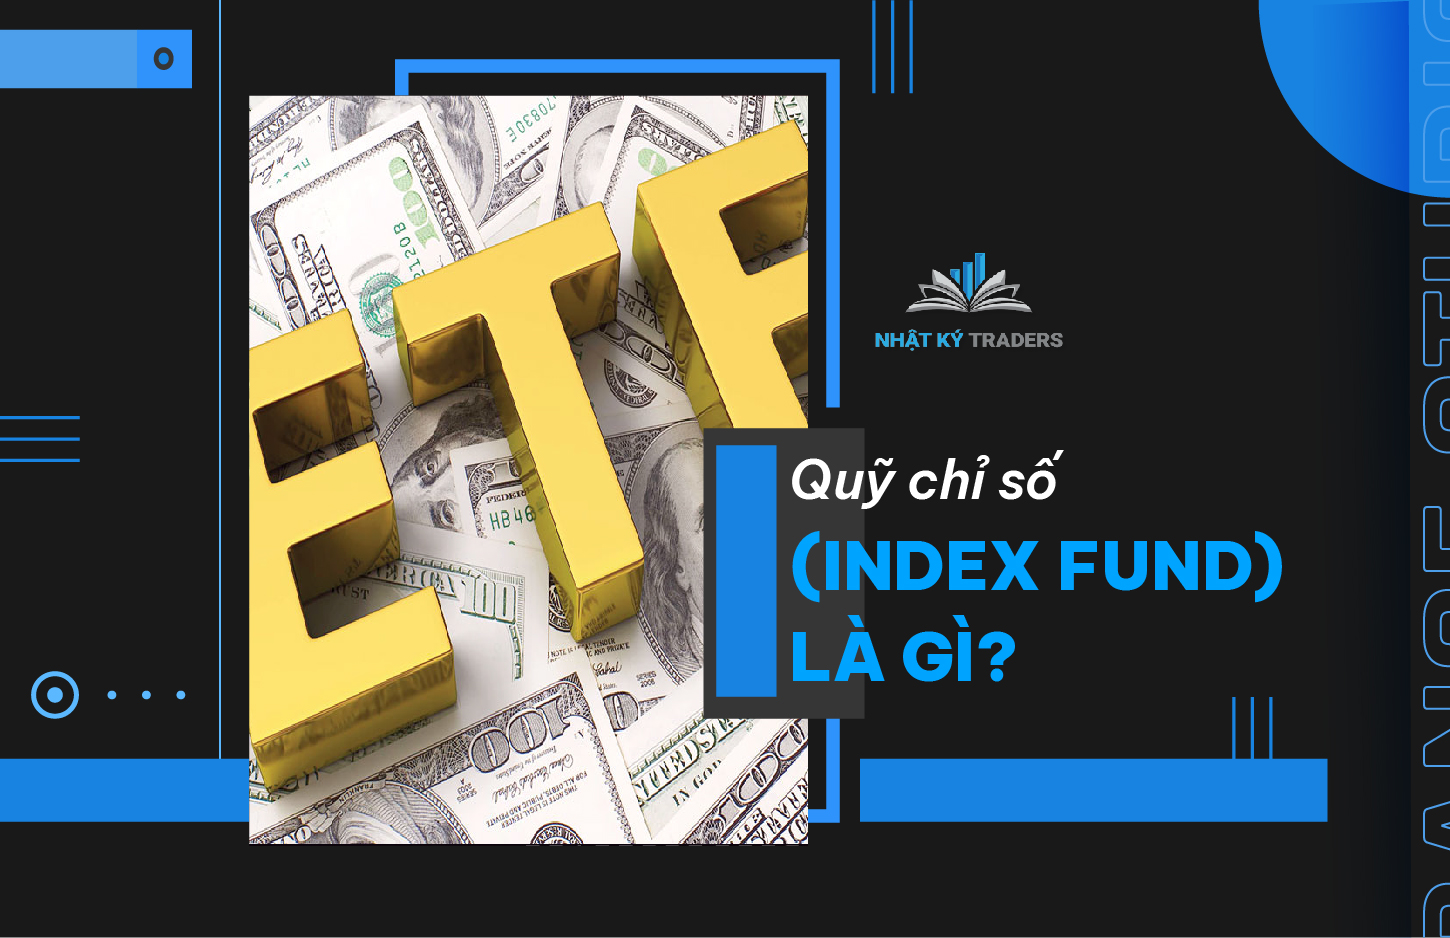 Quỹ chỉ số (Index Fund) là gì?